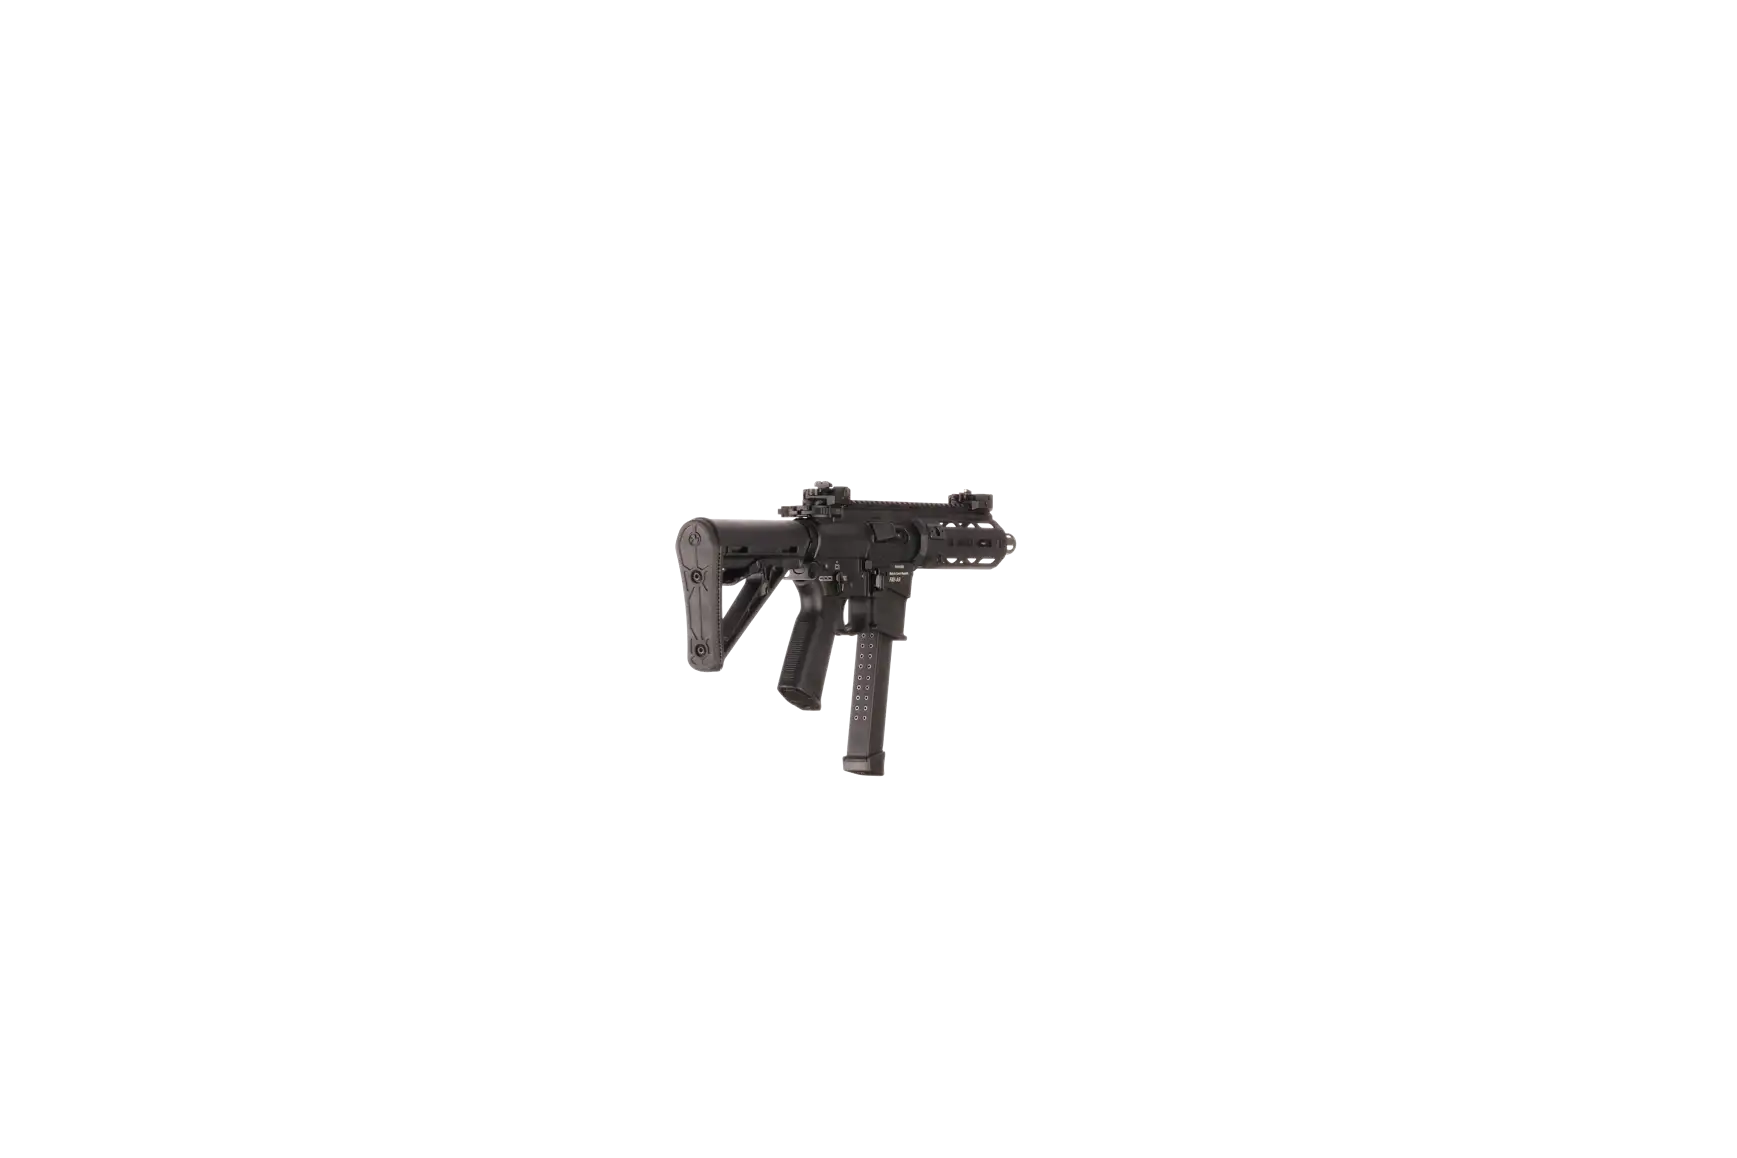 Náhledový obrázek pušky V-AR 9mm luger SPINVIEW 1 R60